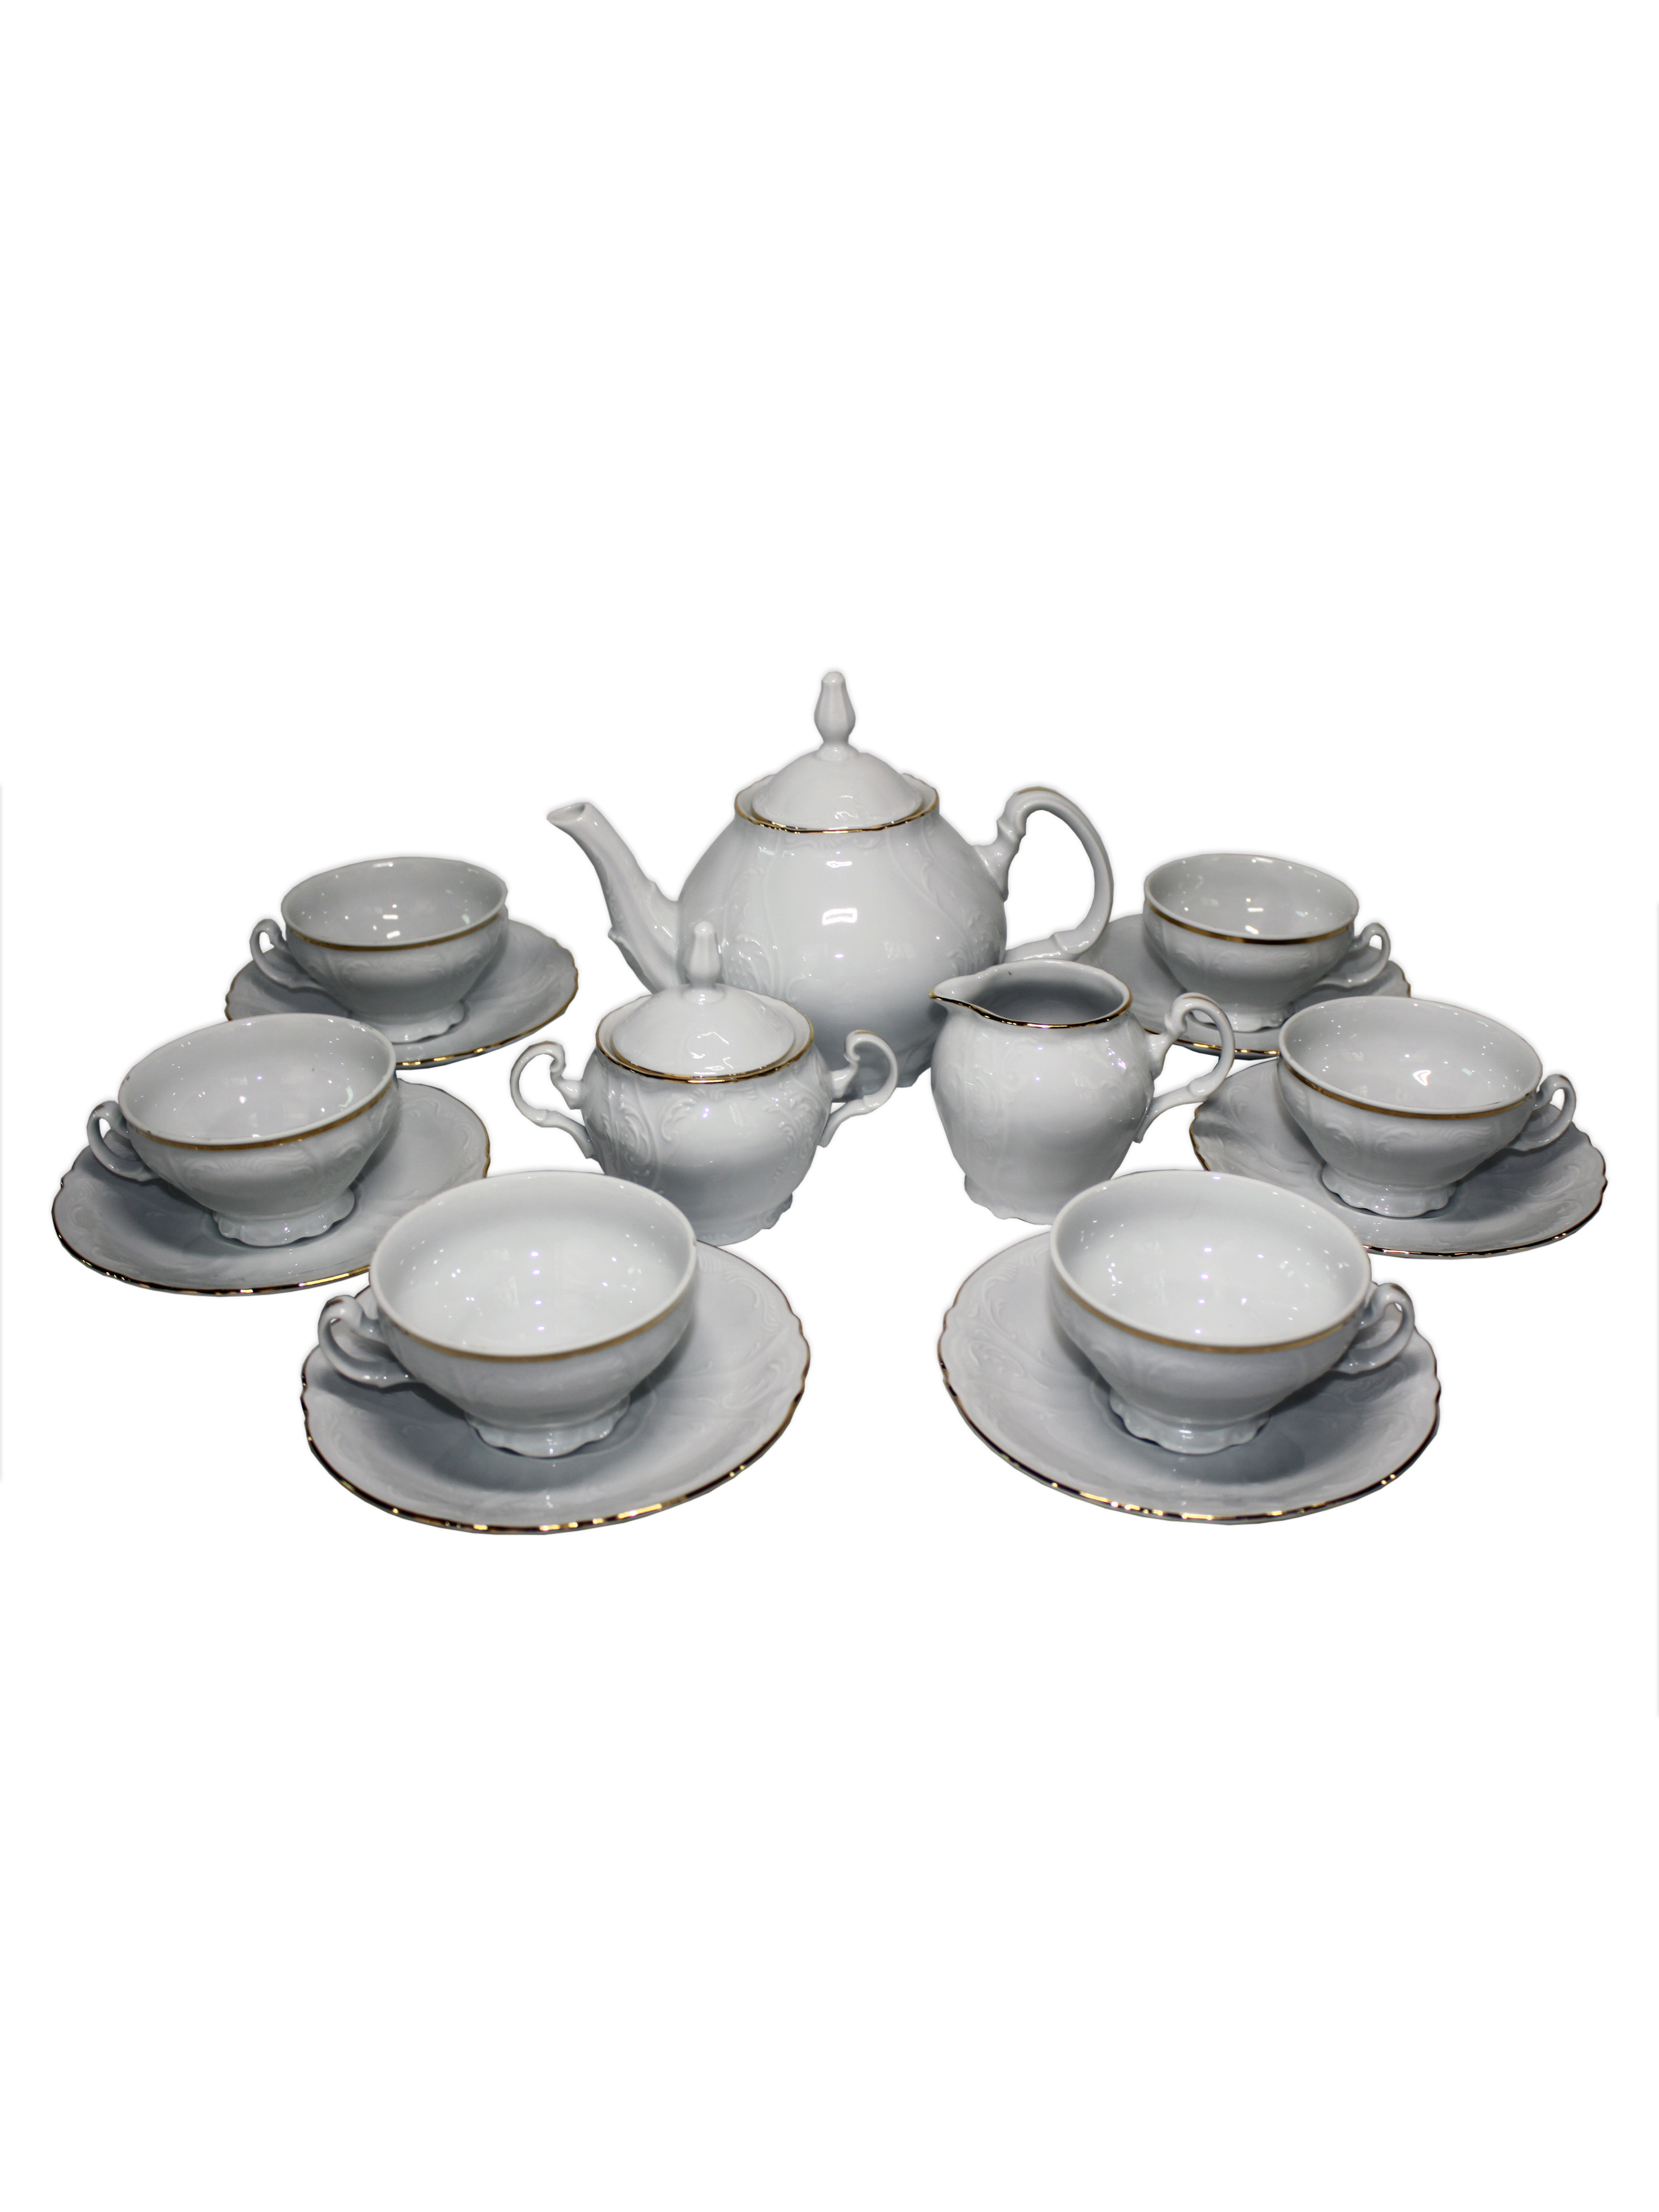 Чайный сервиз на 6 персон 17 предметов Бернадот Bernadotte декор Отводка золото. Фарфор Тхун, Чехия.